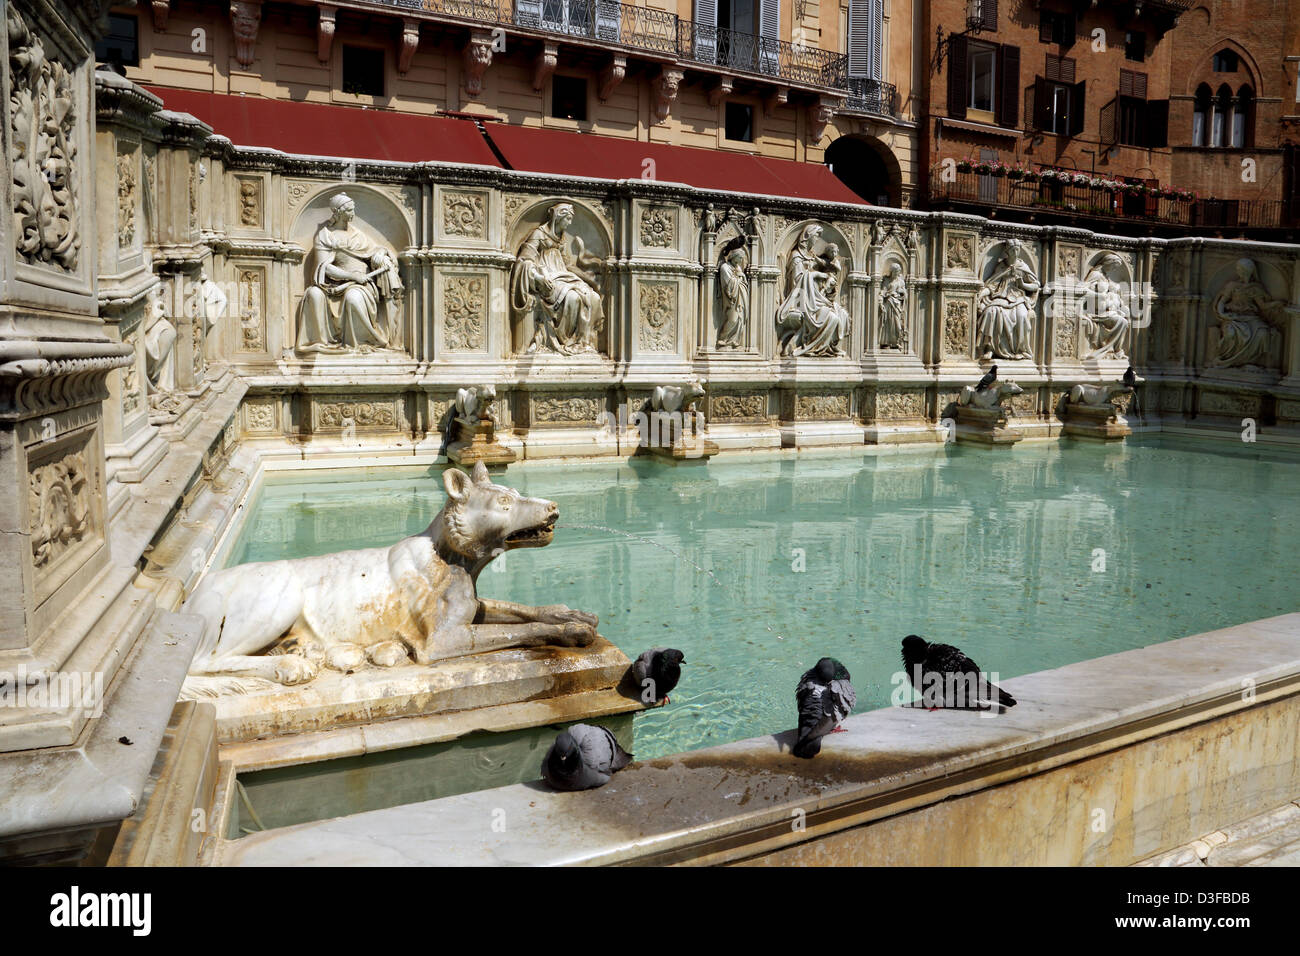 The Fonte Gaia (Happy Fountain) in Piazza del Campo in Siena Italy Stock Photo